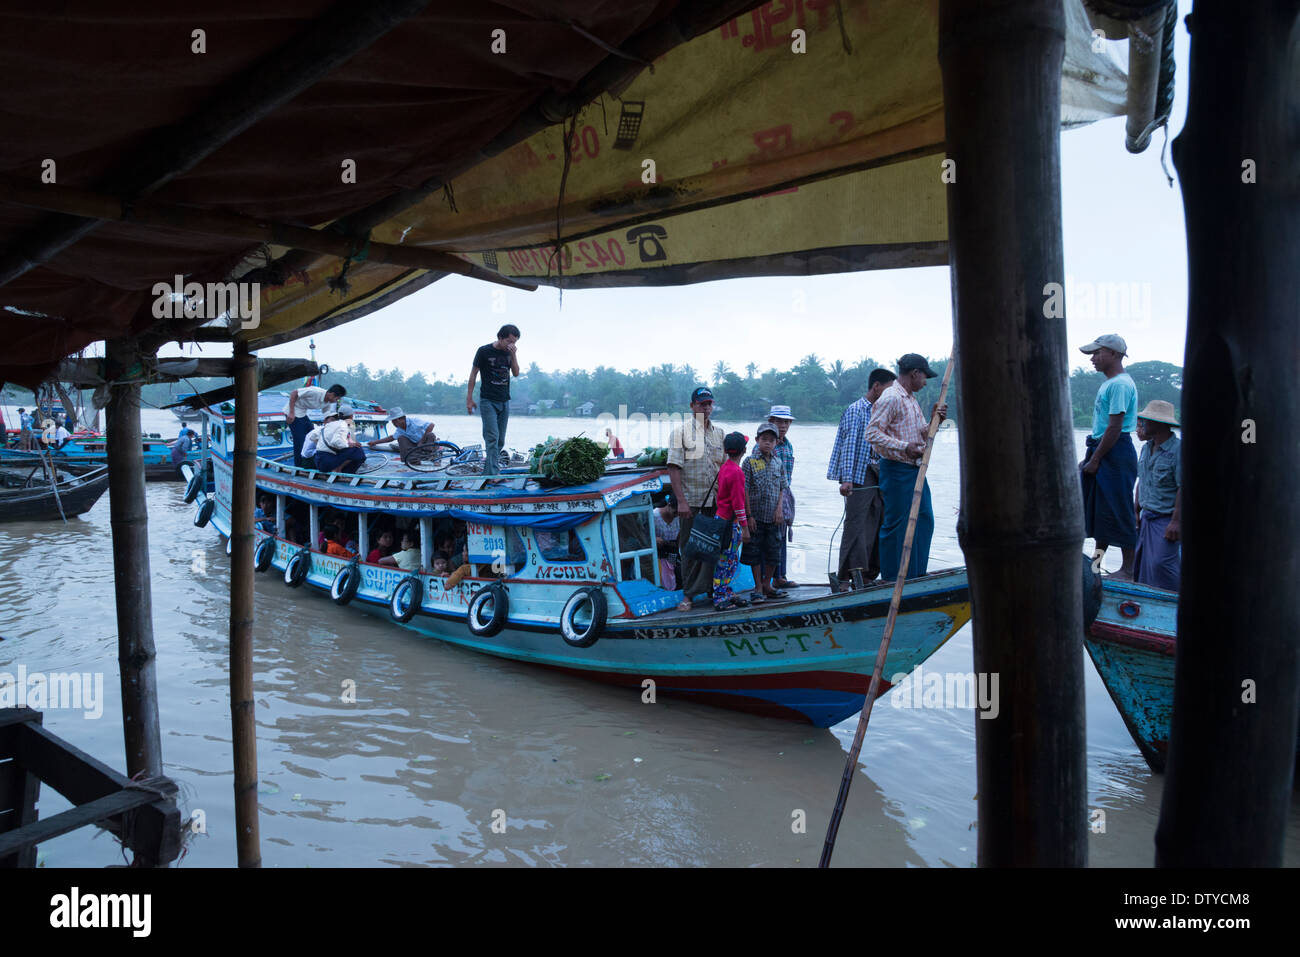 Attività del porto. Wakama. Divisione Irrawaddyi. Myanmar (Birmania). Foto Stock